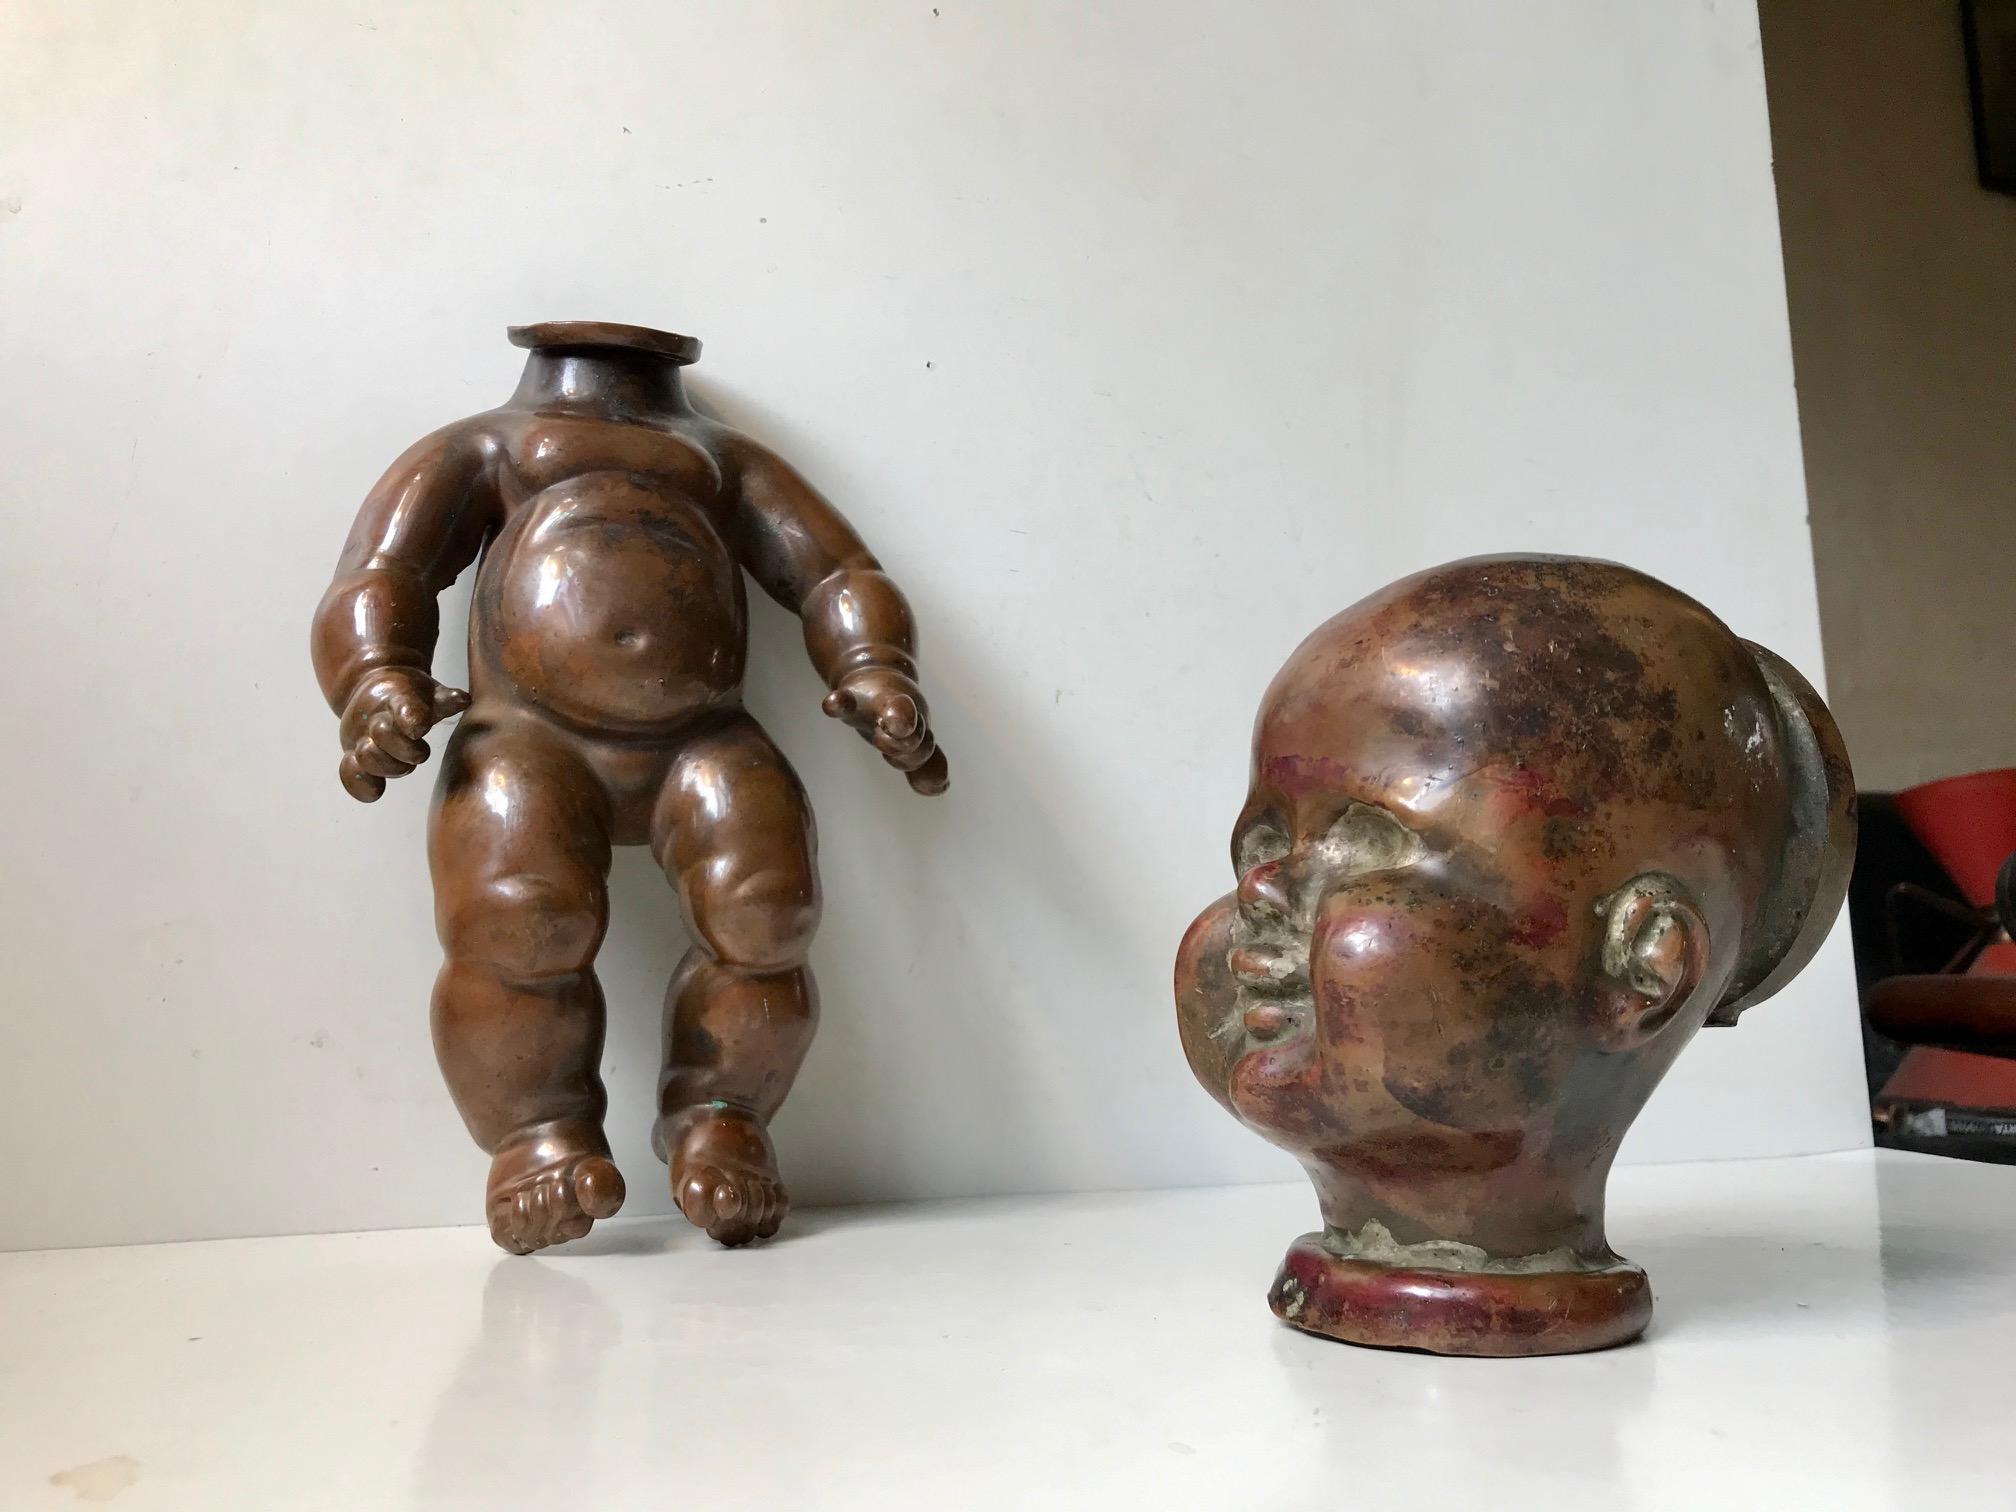 Vollständige und intakte französische Puppenform aus massivem Kupfer. Sehr frühe industriell genutzte Form zur Herstellung von Gummipuppen. Körper und Kopf sieht man nur selten zusammen. Die Form ist nach außen hin ungewöhnlich detailliert. Beide